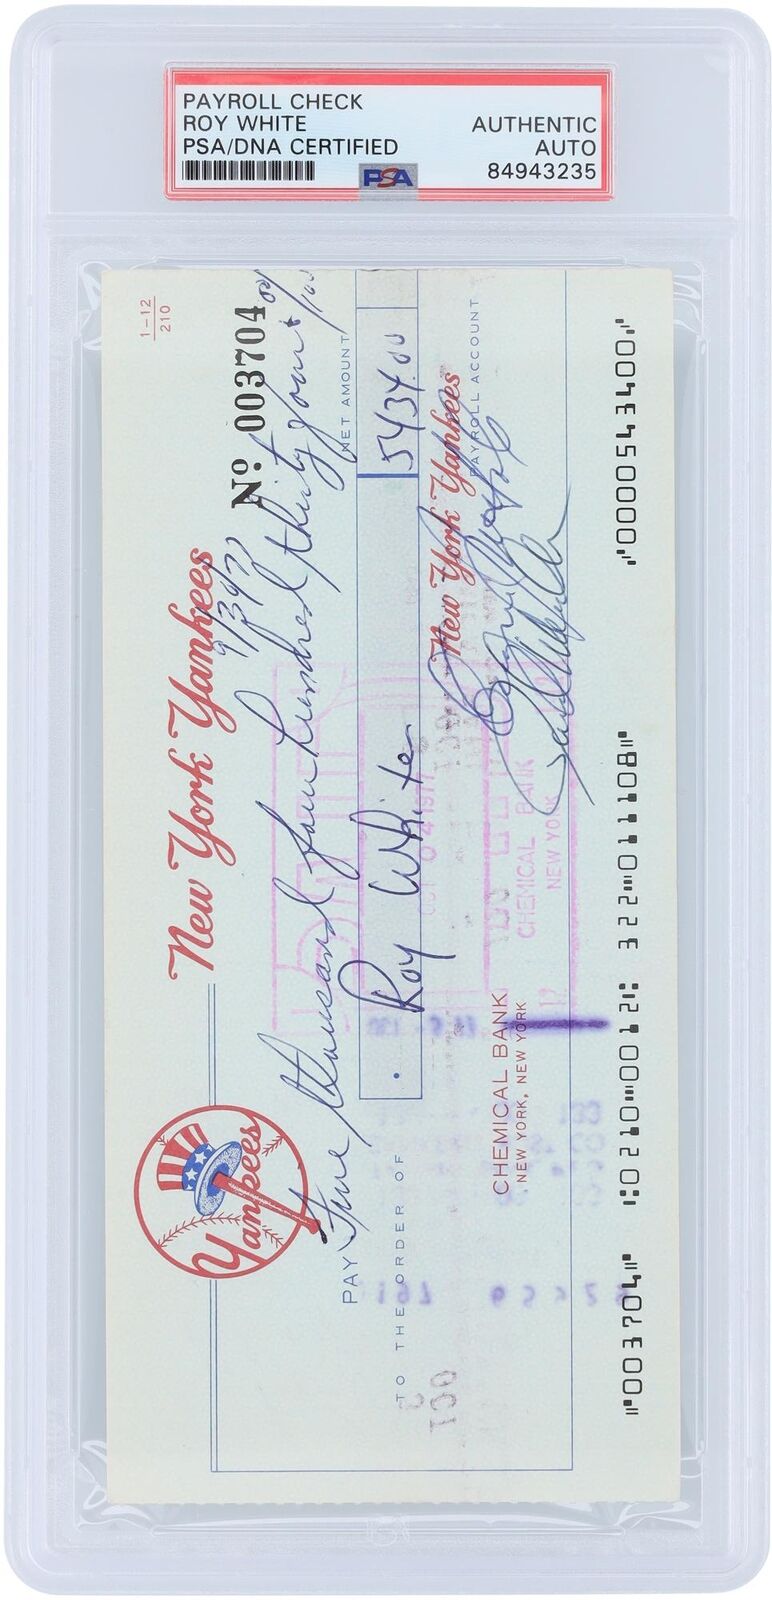 Roy White New York Yankees Signed Check from September 30, 1977 - PSA 84943235